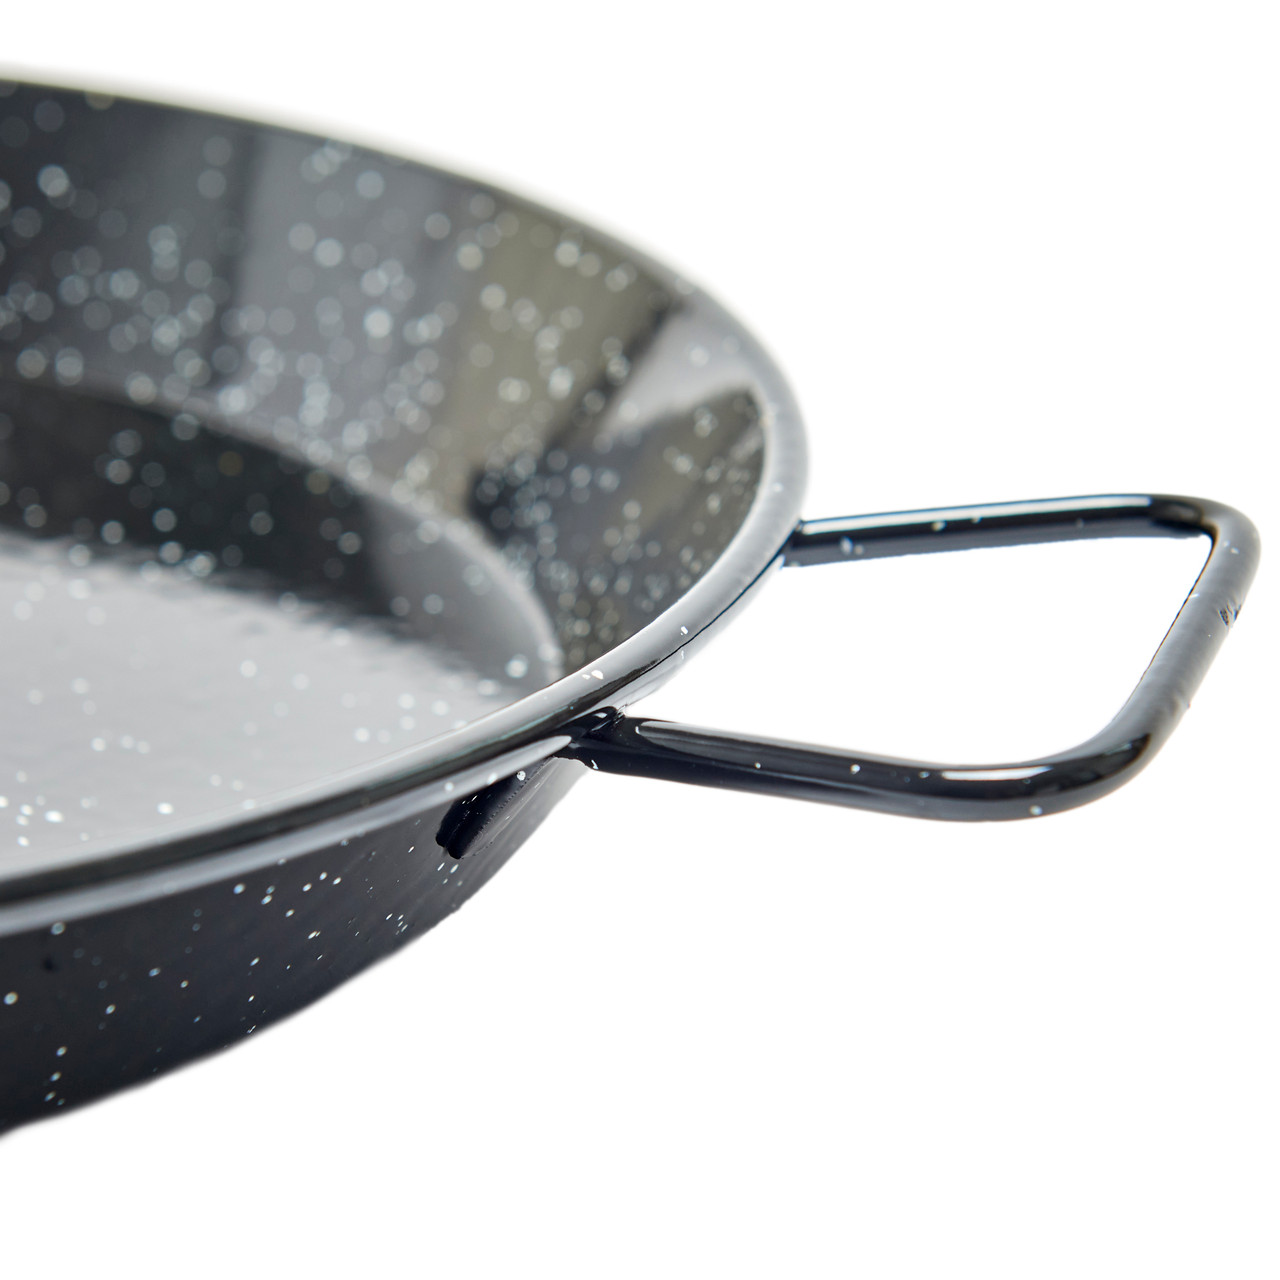 Paella Pan Stainless Steel Frying Pan Seafood Rice - Temu